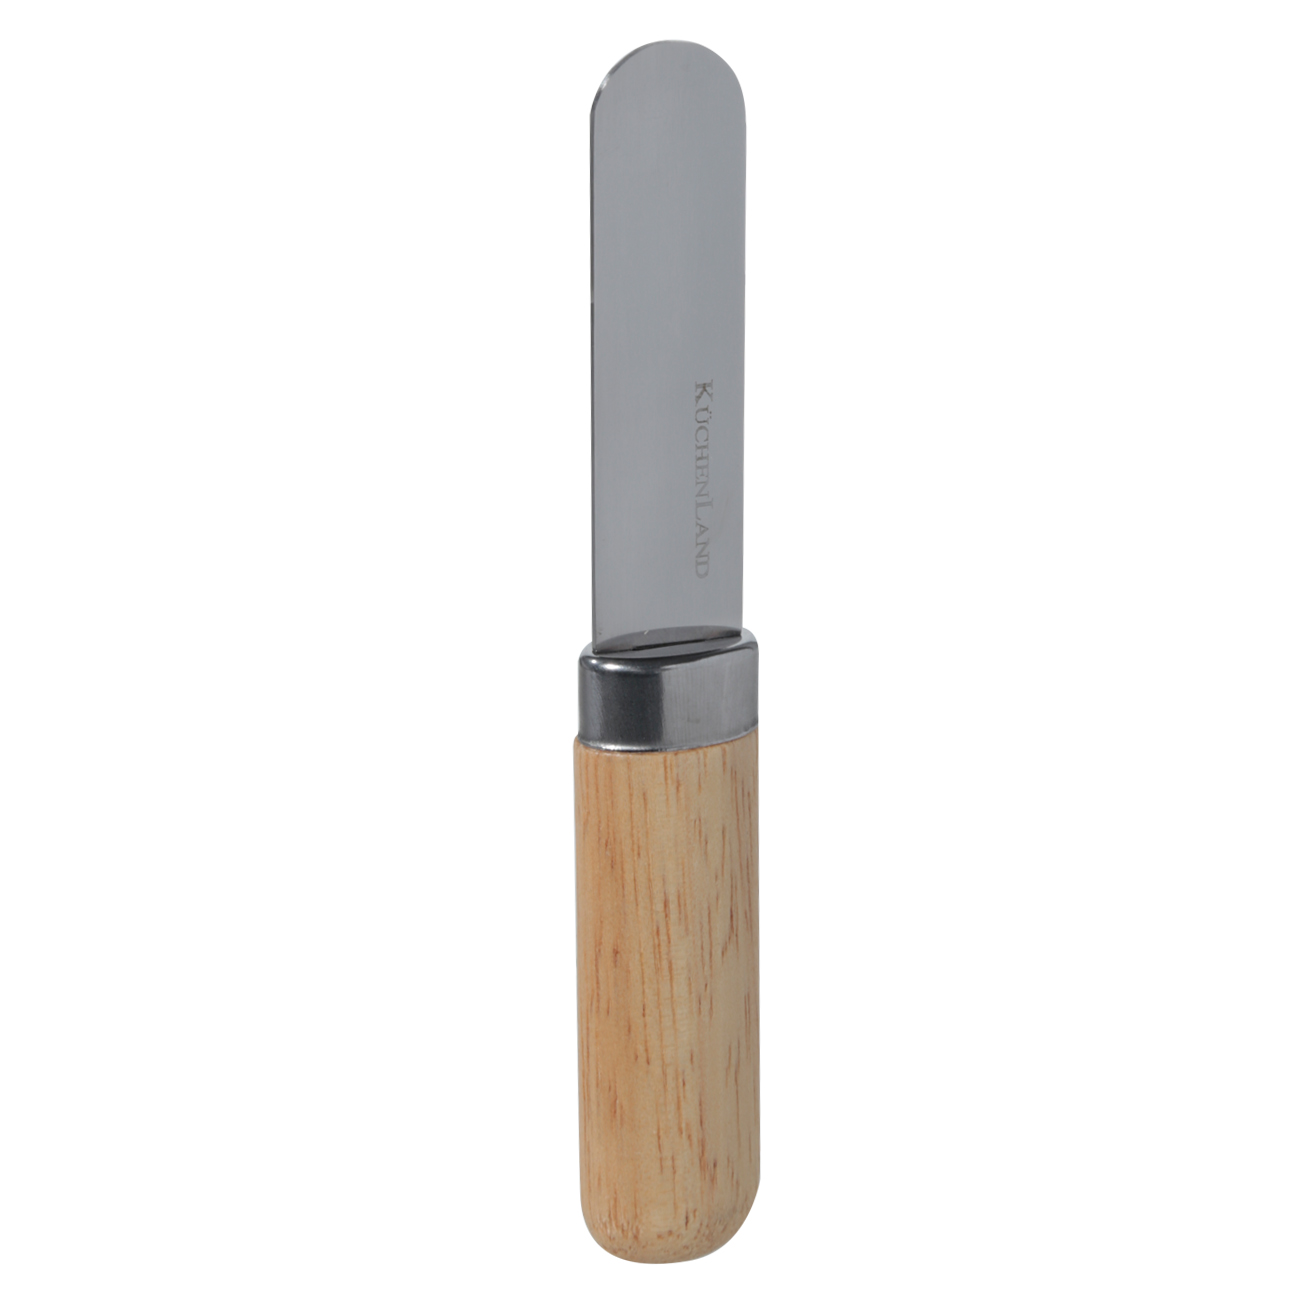 Масленка, 15 см, с ножом, фарфор N/дерево, овальная, Light kitchen